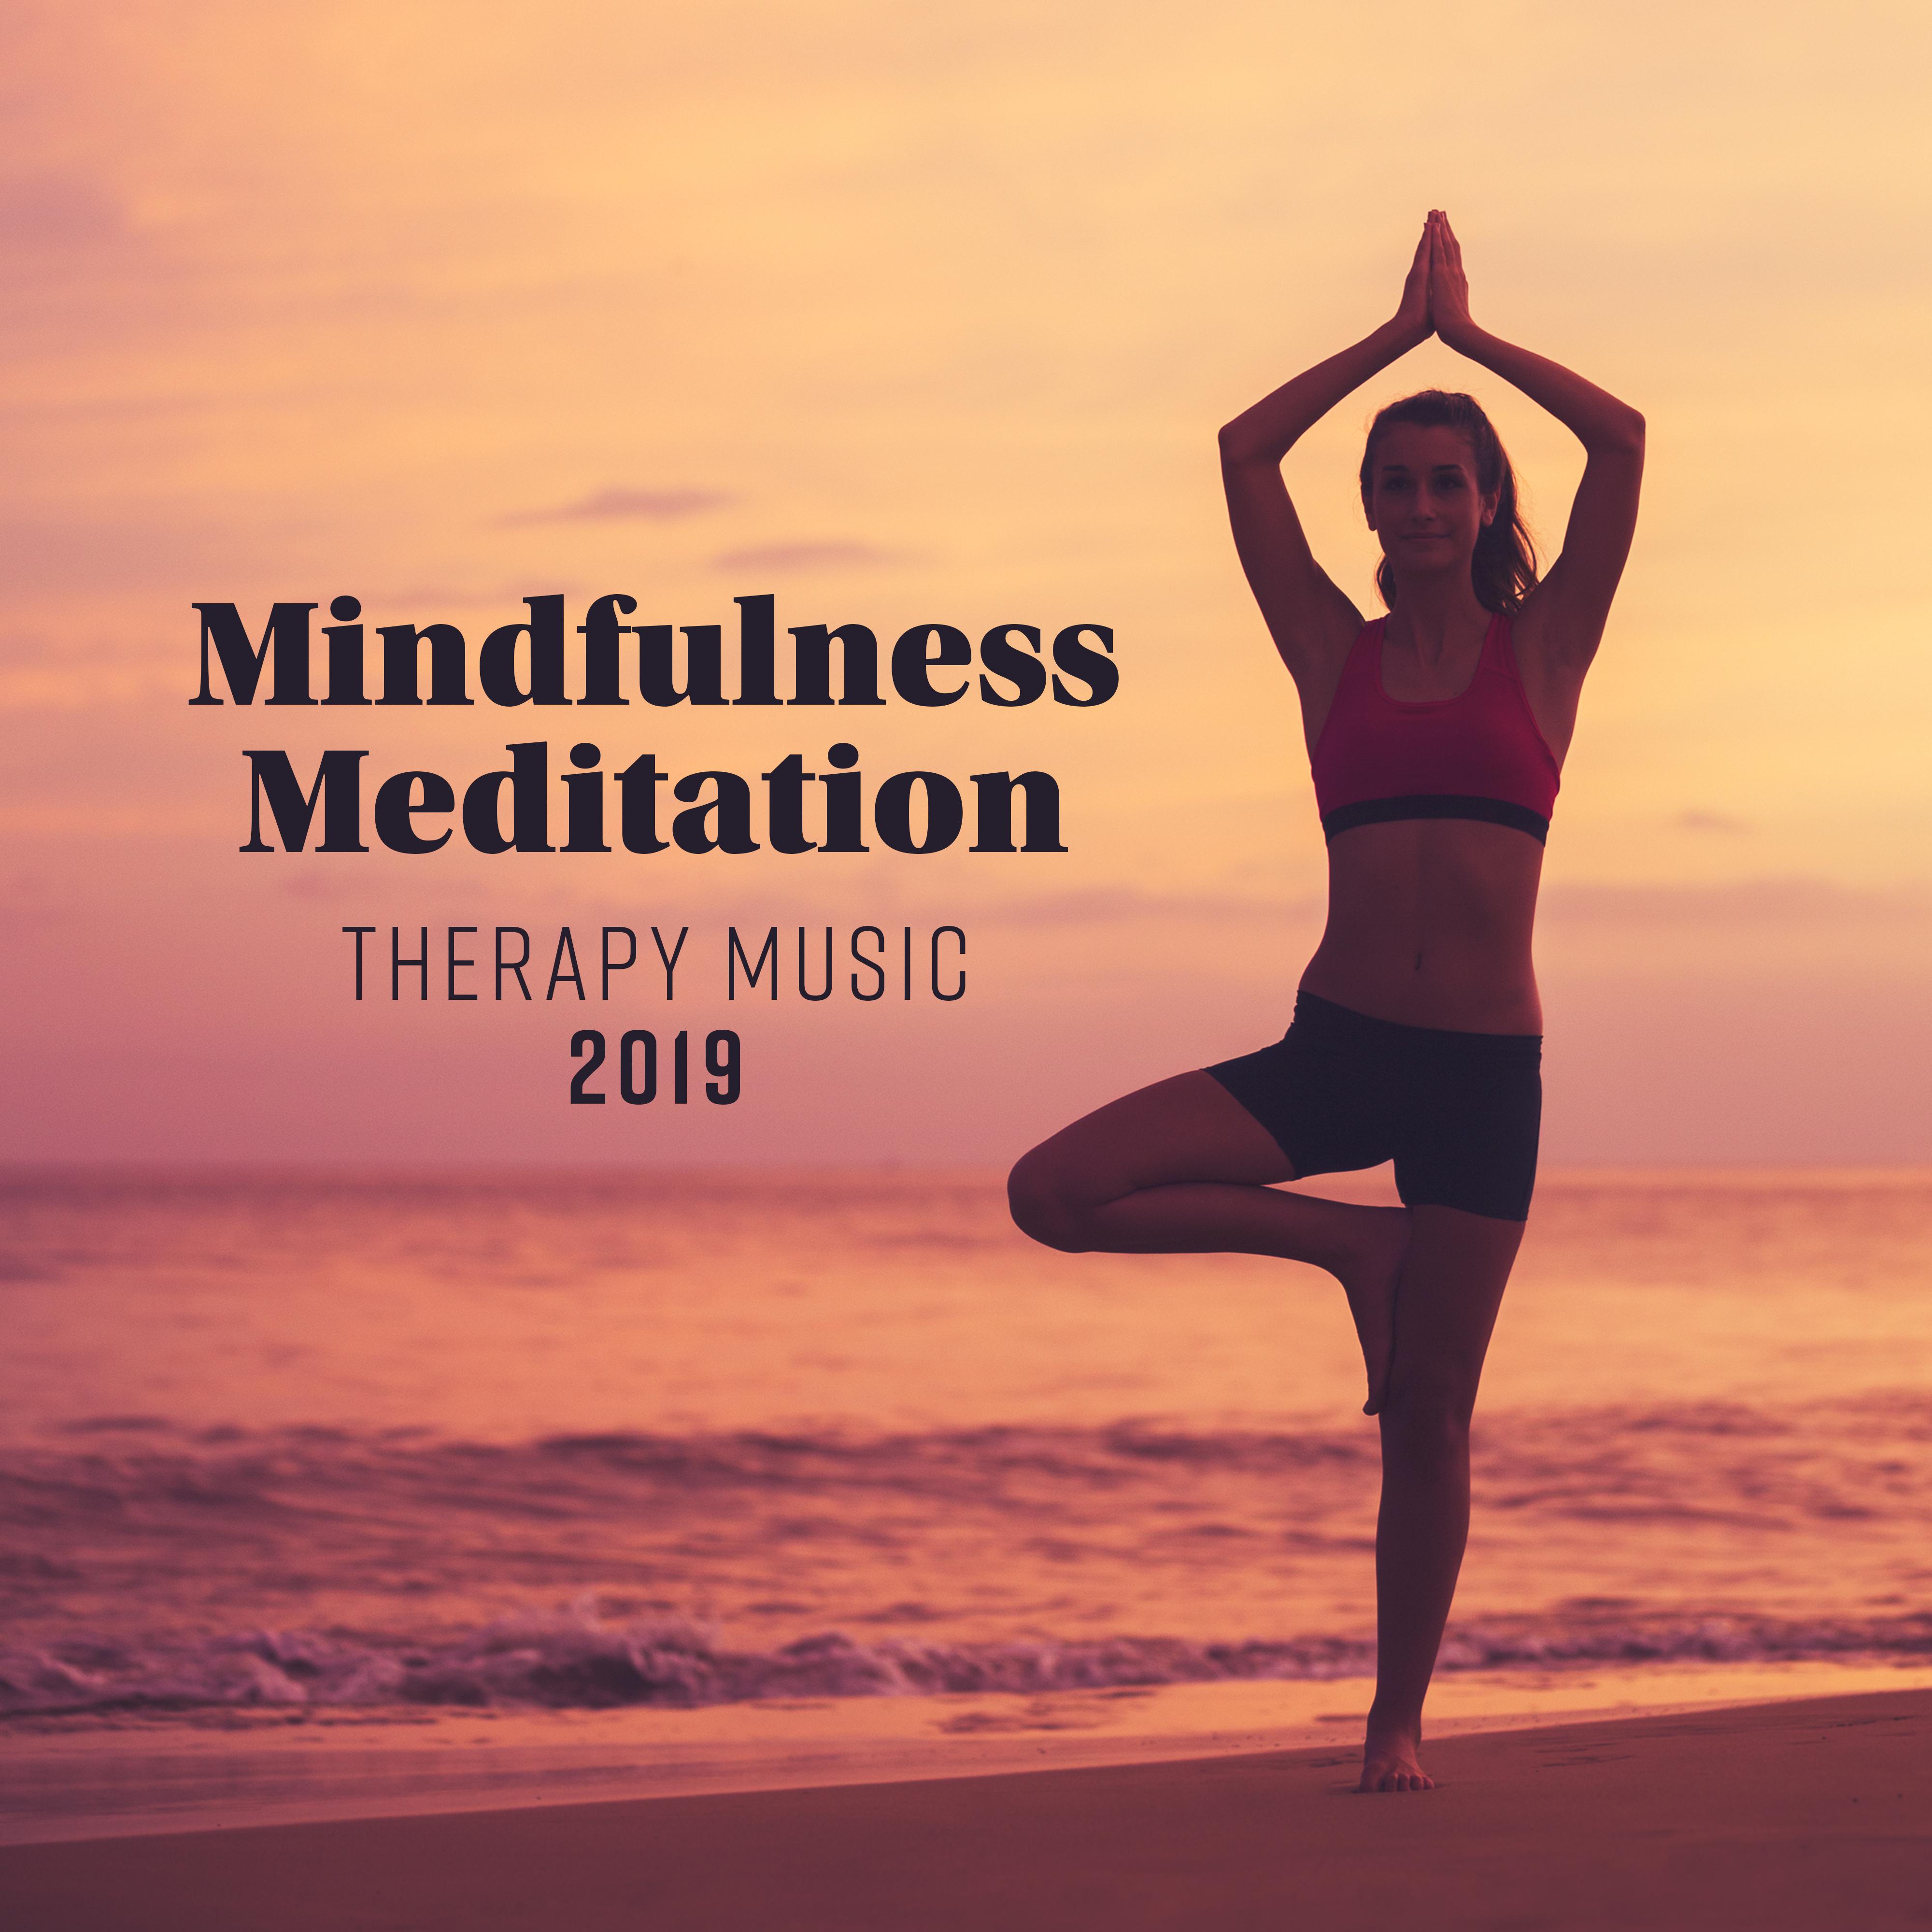 Mindfulness Meditation Therapy Music 2019